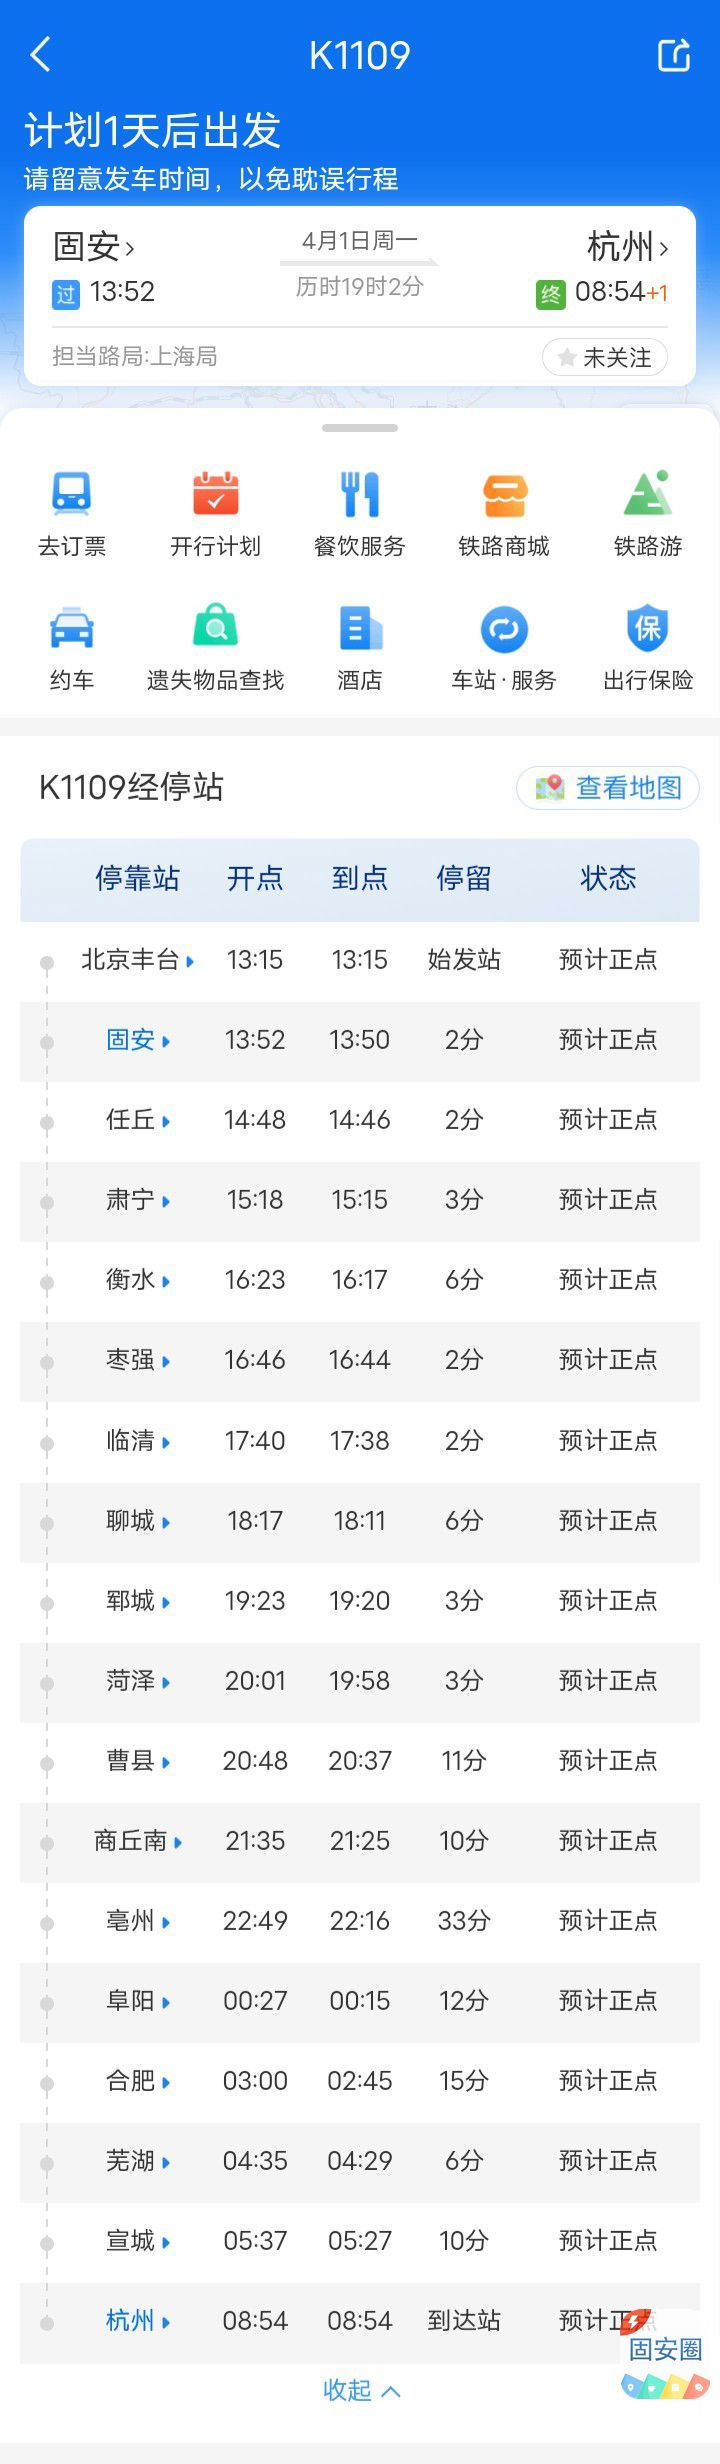 固安站4月1日起开往直达杭州站列车1478 作者:峰华花园 帖子ID:296956 固安站,起开,开往,直达,杭州